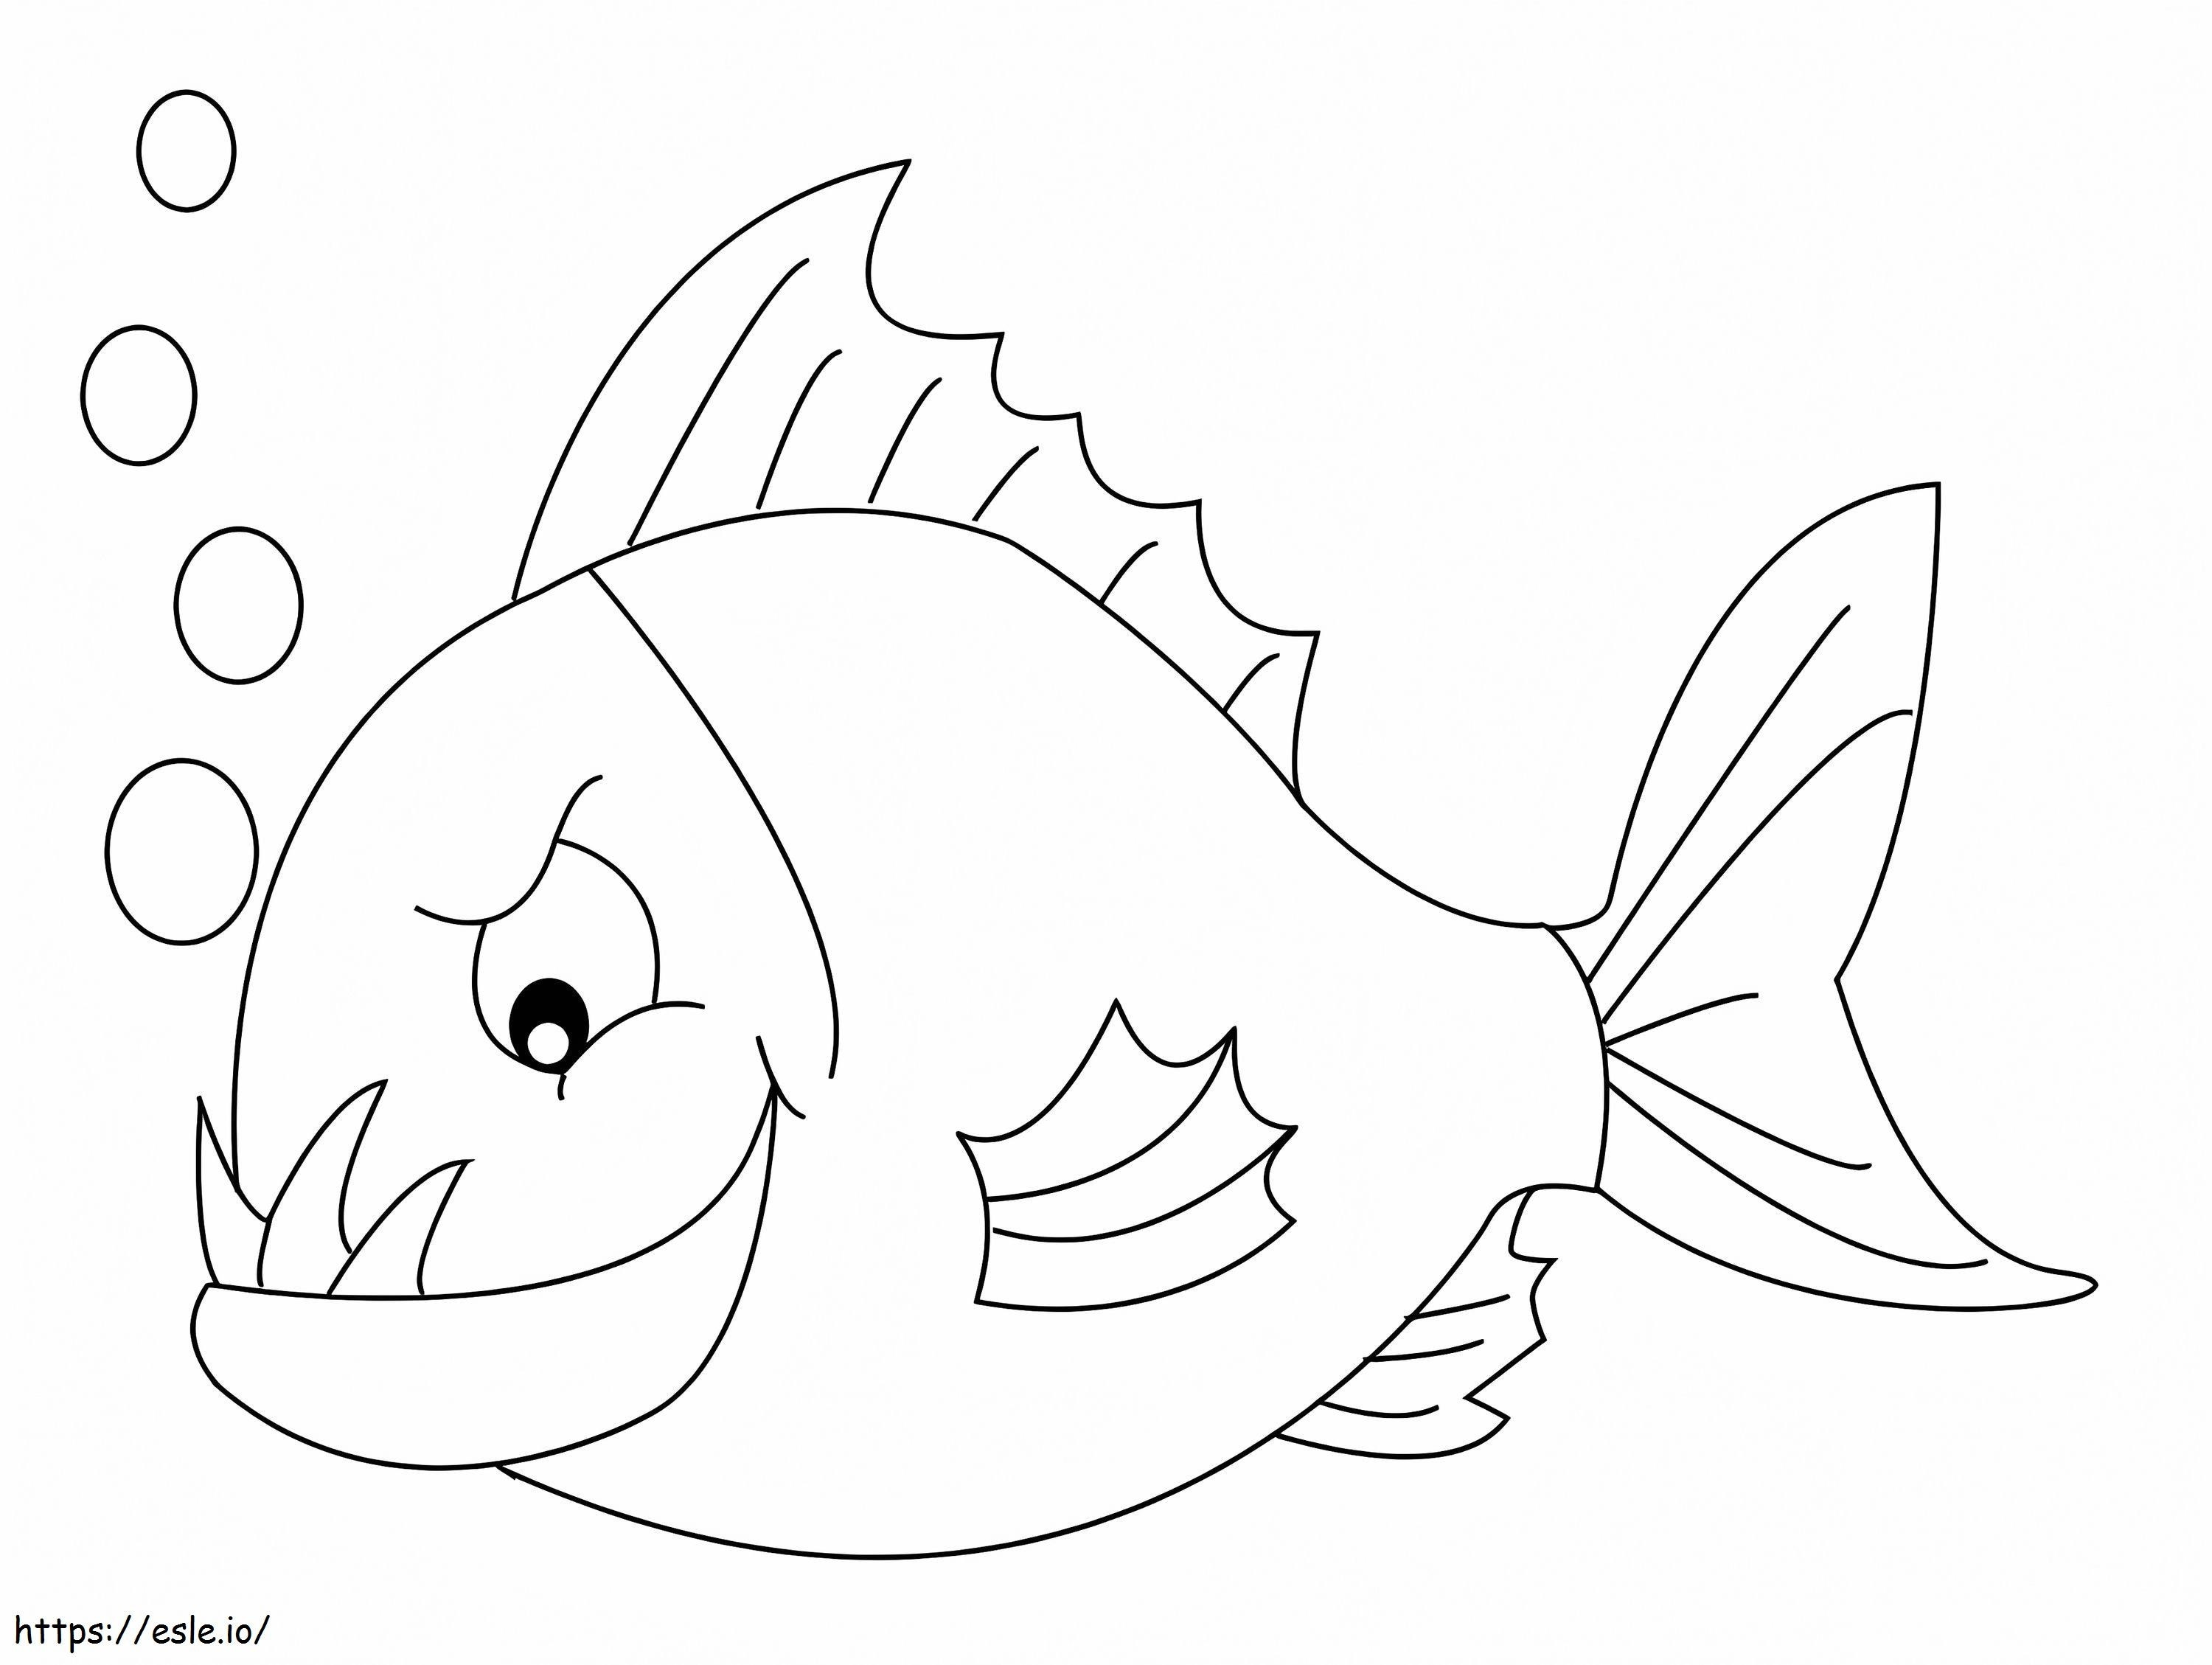 Bad Piranha coloring page